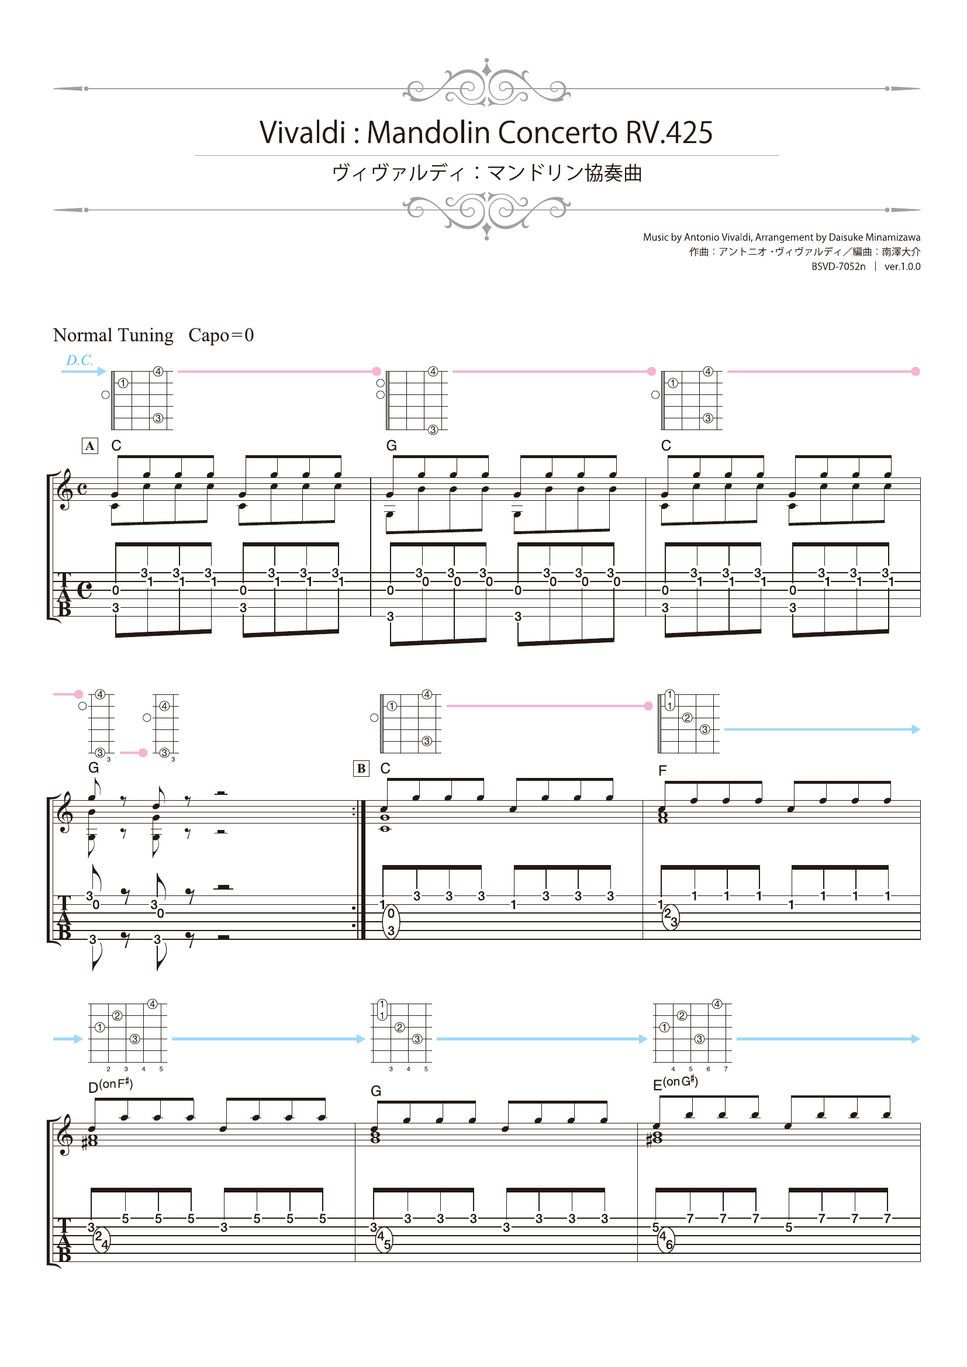 Vivaldi - Mandolin Concerto RV.425 (Solo Guitar) by Daisuke Minamizawa